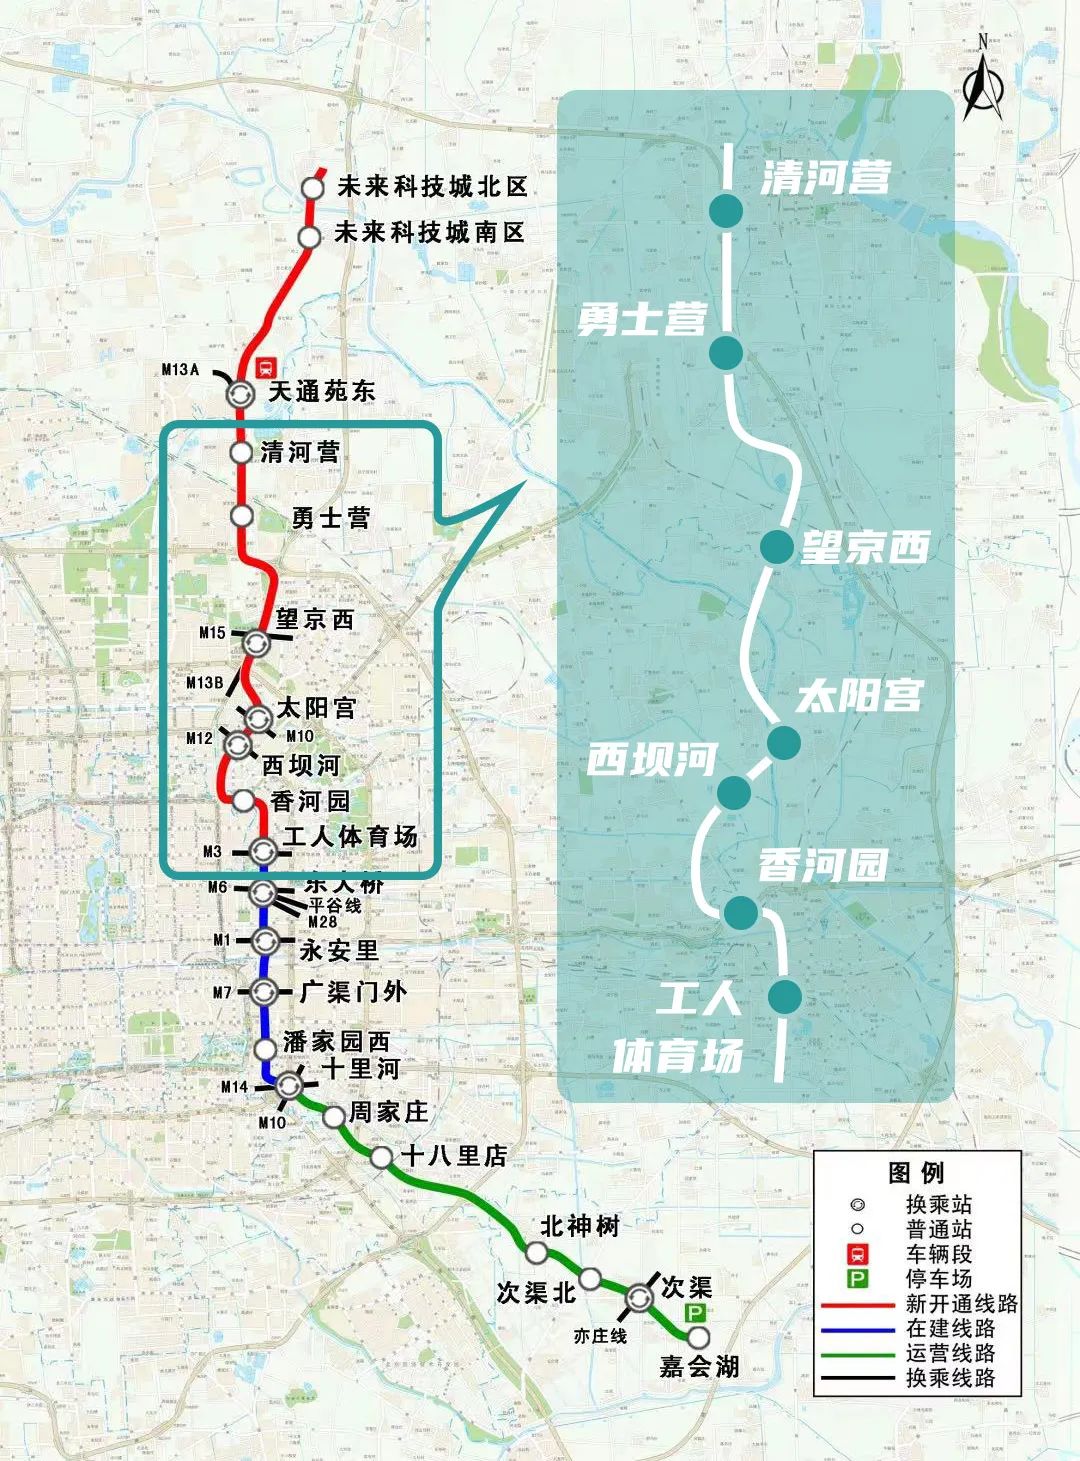 北京地铁17号线北段朝阳段线路图预计今年年底可实现开通试运营!